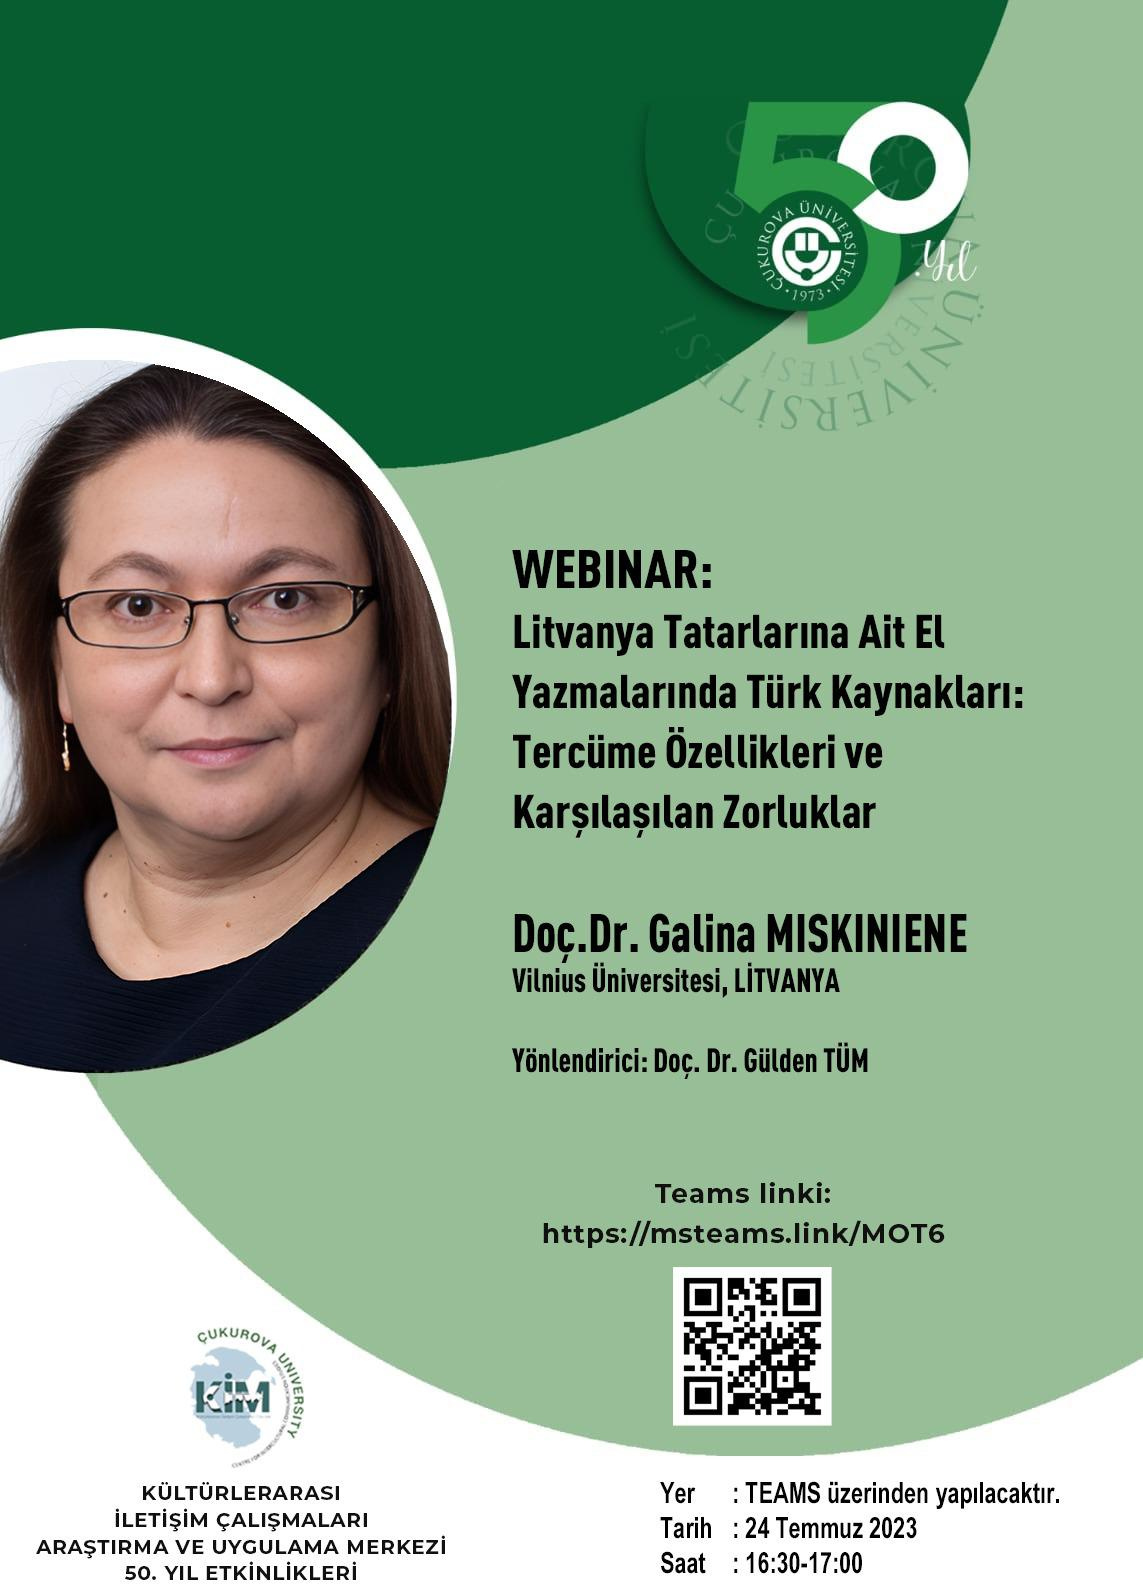 KİM Webinar: Doç.Dr. Galina Miskiniene - Litvanya Tatarlarına Ait El Yazmalarında Türk Kaynakları: Tercüme Özellikleri ve Karşılaşılan Zorluklar